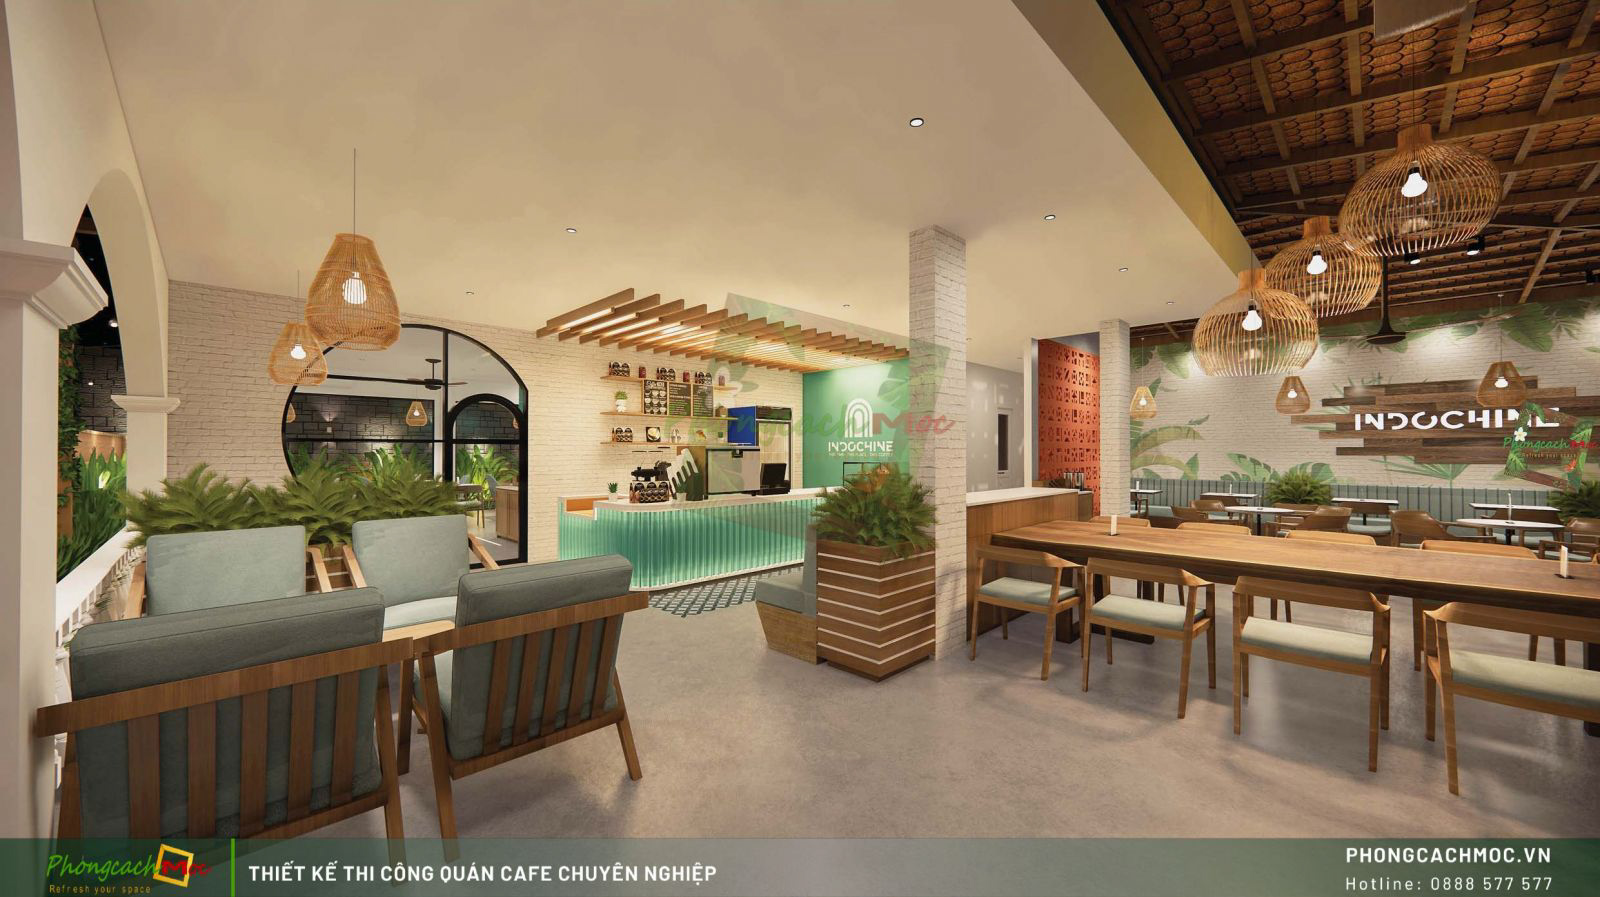 Mẫu thiết kế quán cafe phong cách Đông Dương (Indochine)